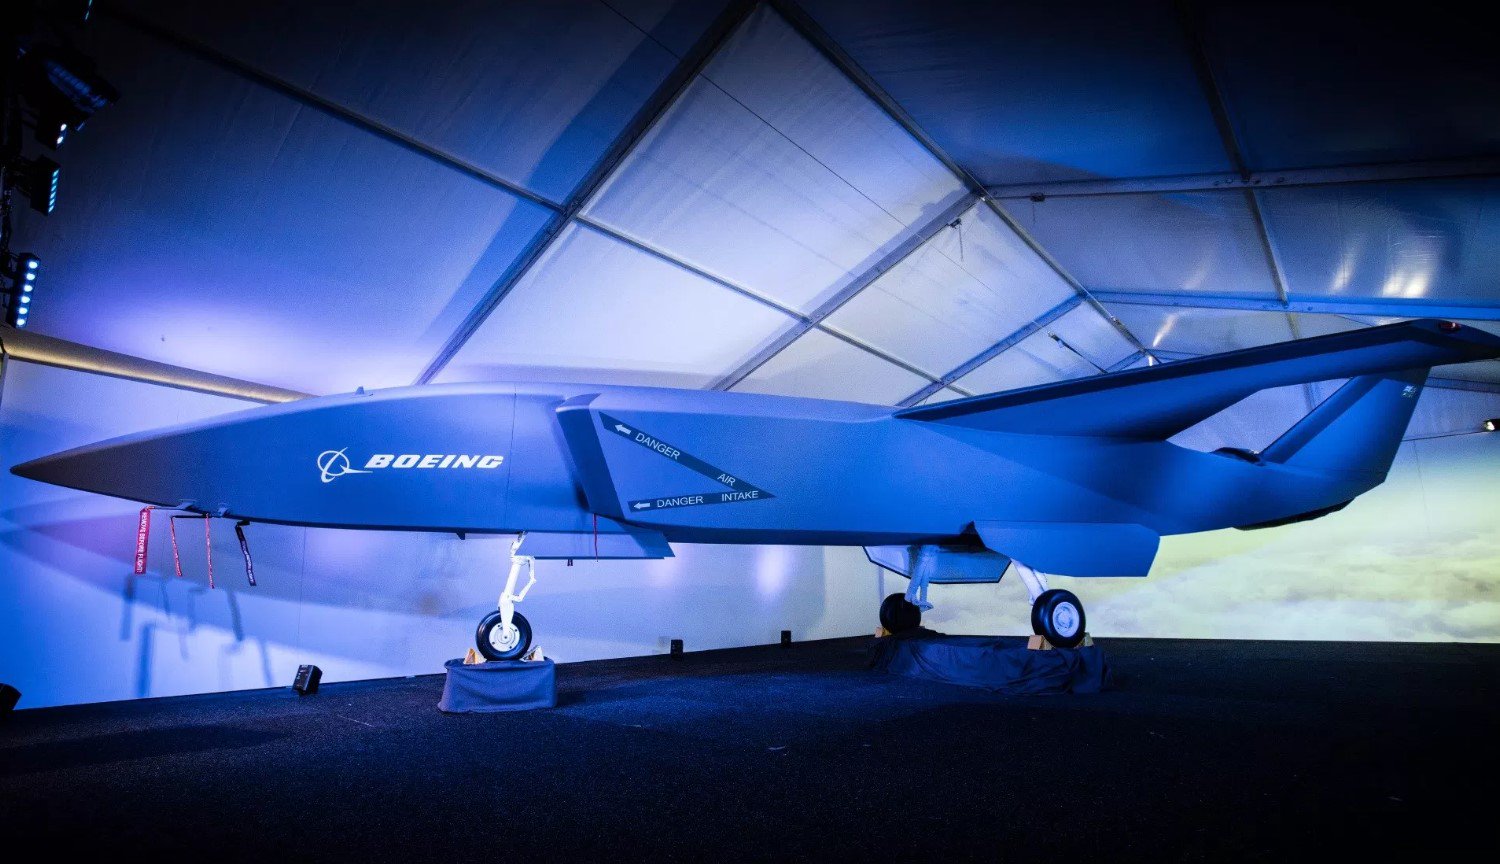 İnsansız savaş uçağı Boeing — zaten 2020 yılında